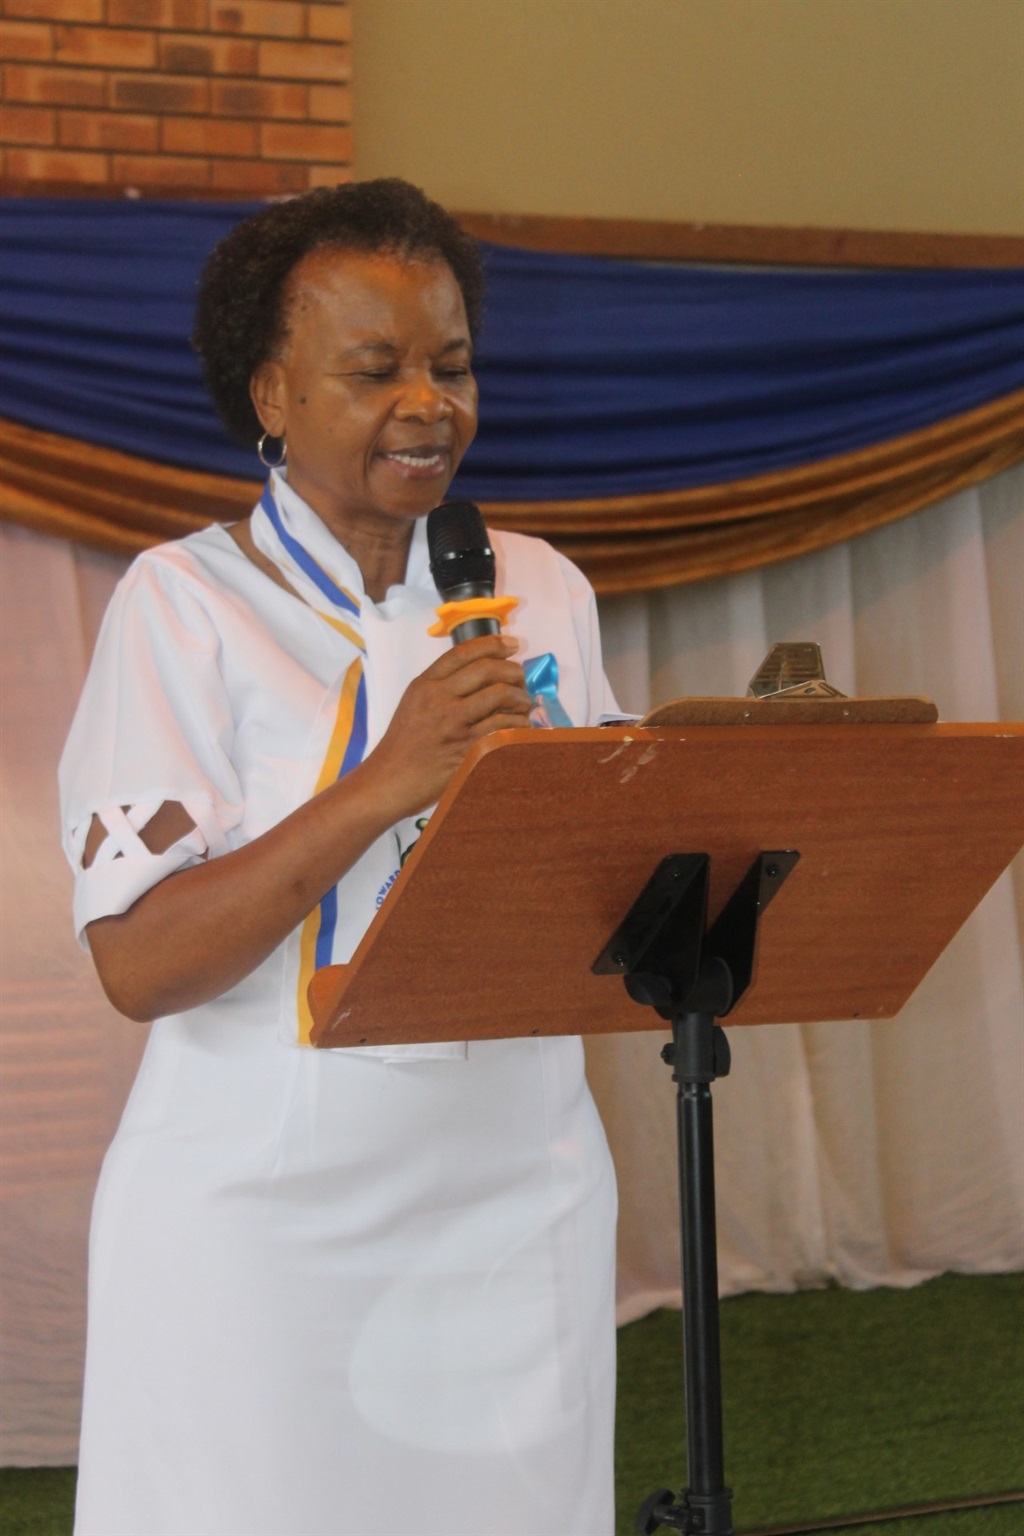 The leader of Mabopane Retired Nurses Task Team, M